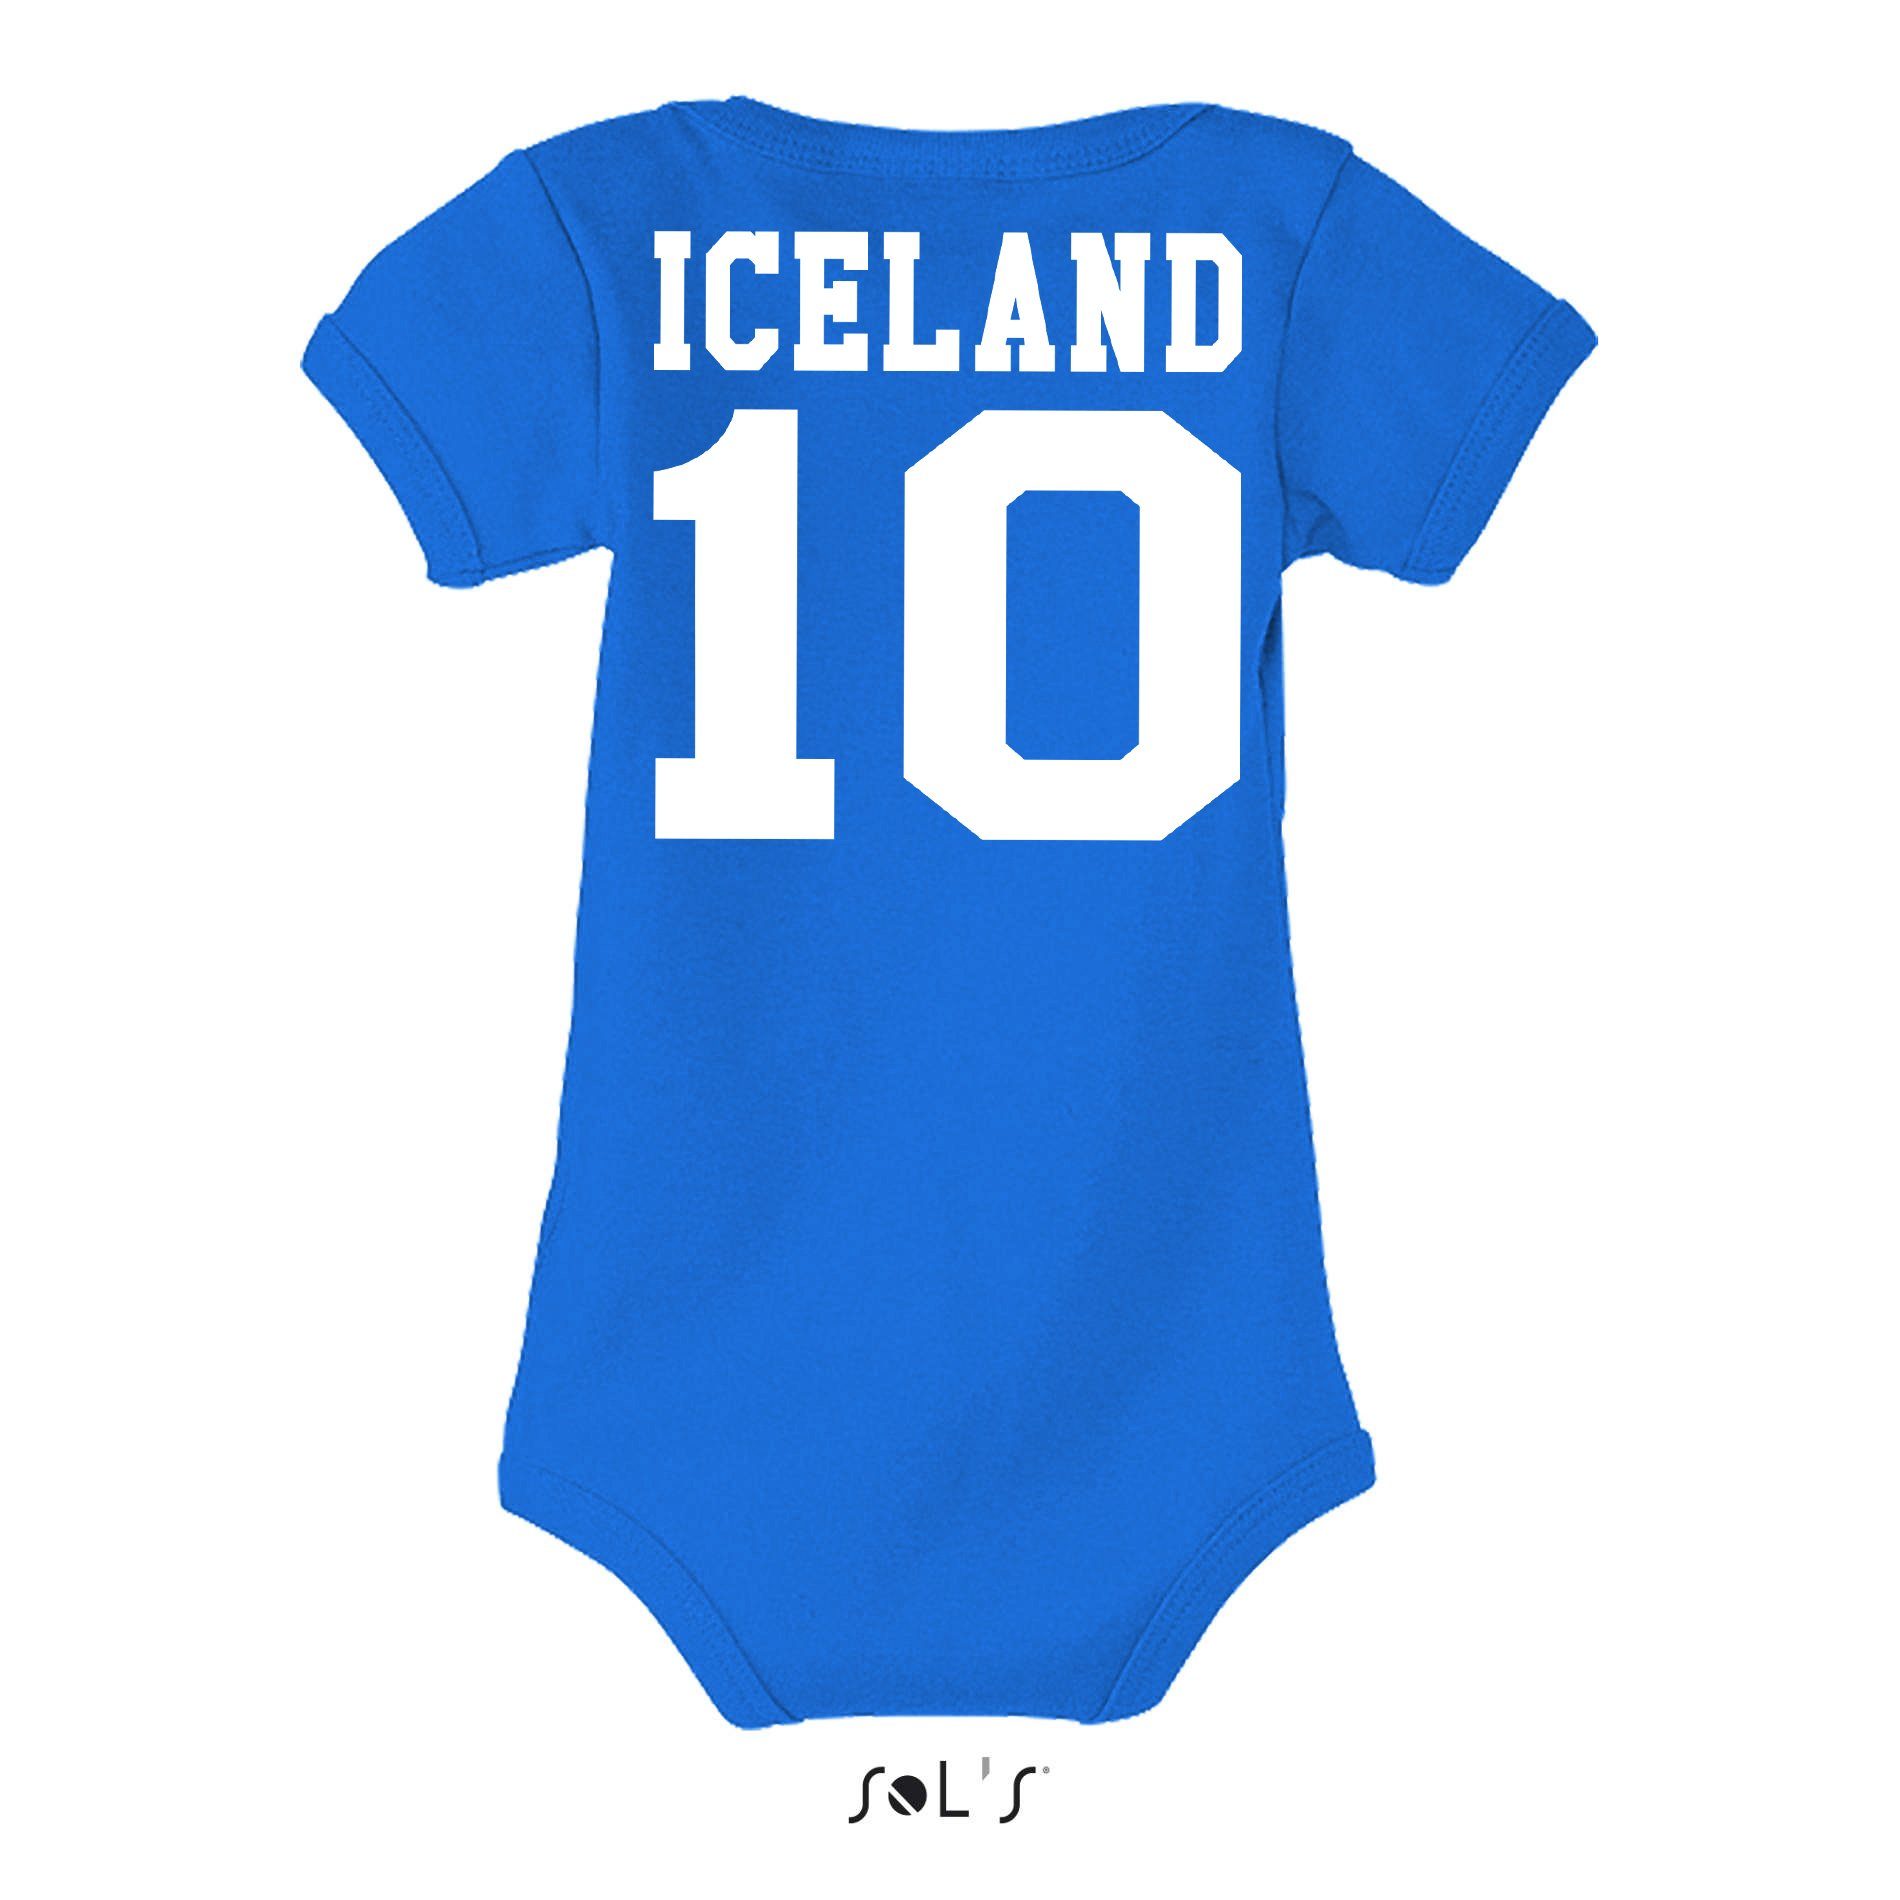 Brownie Island WM Baby Meister Weiss/Blau Trikot Handball Strampler Blondie EM & Iceland Kinder Sport Fußball